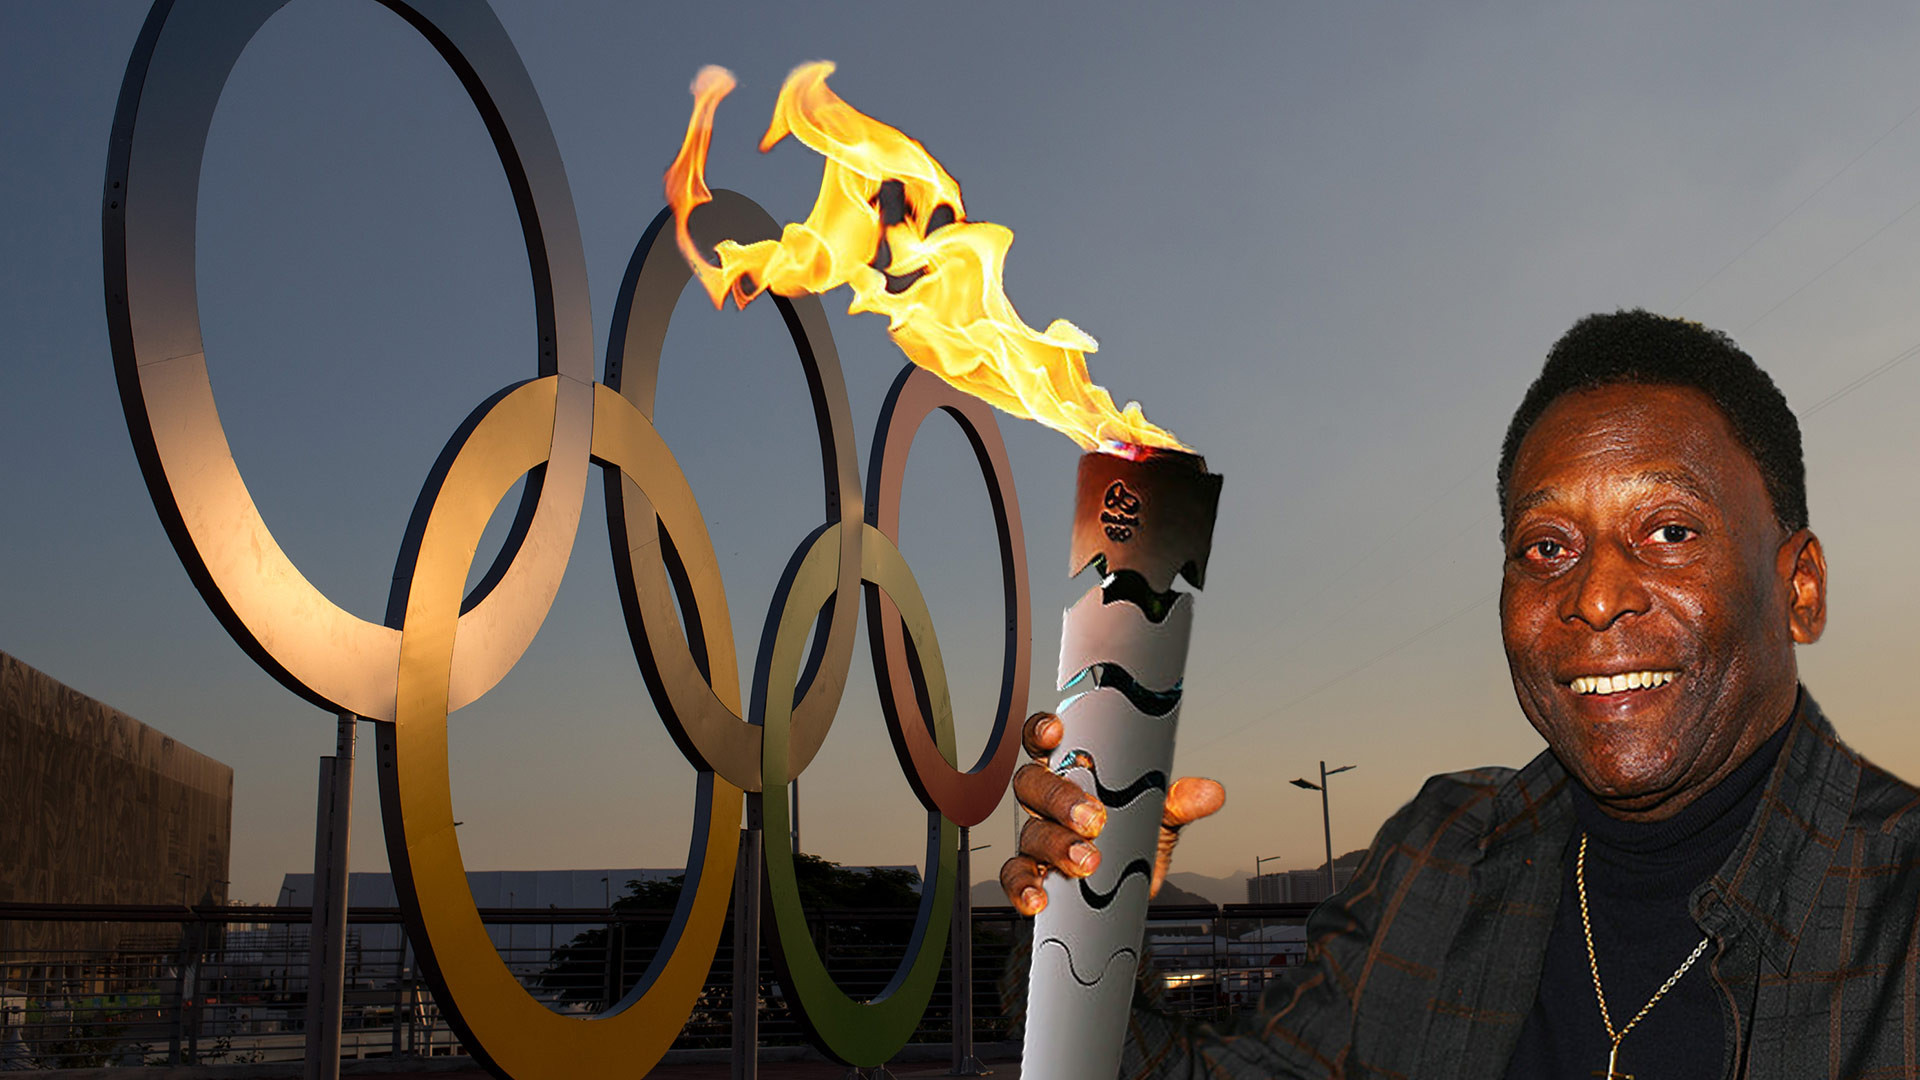 Олимпийский огонь современных игр зажигается. Пеле игрушка. Фото зажжение олимпийского огня Рио 2016. Фото Пеле с олимпийским огнем.